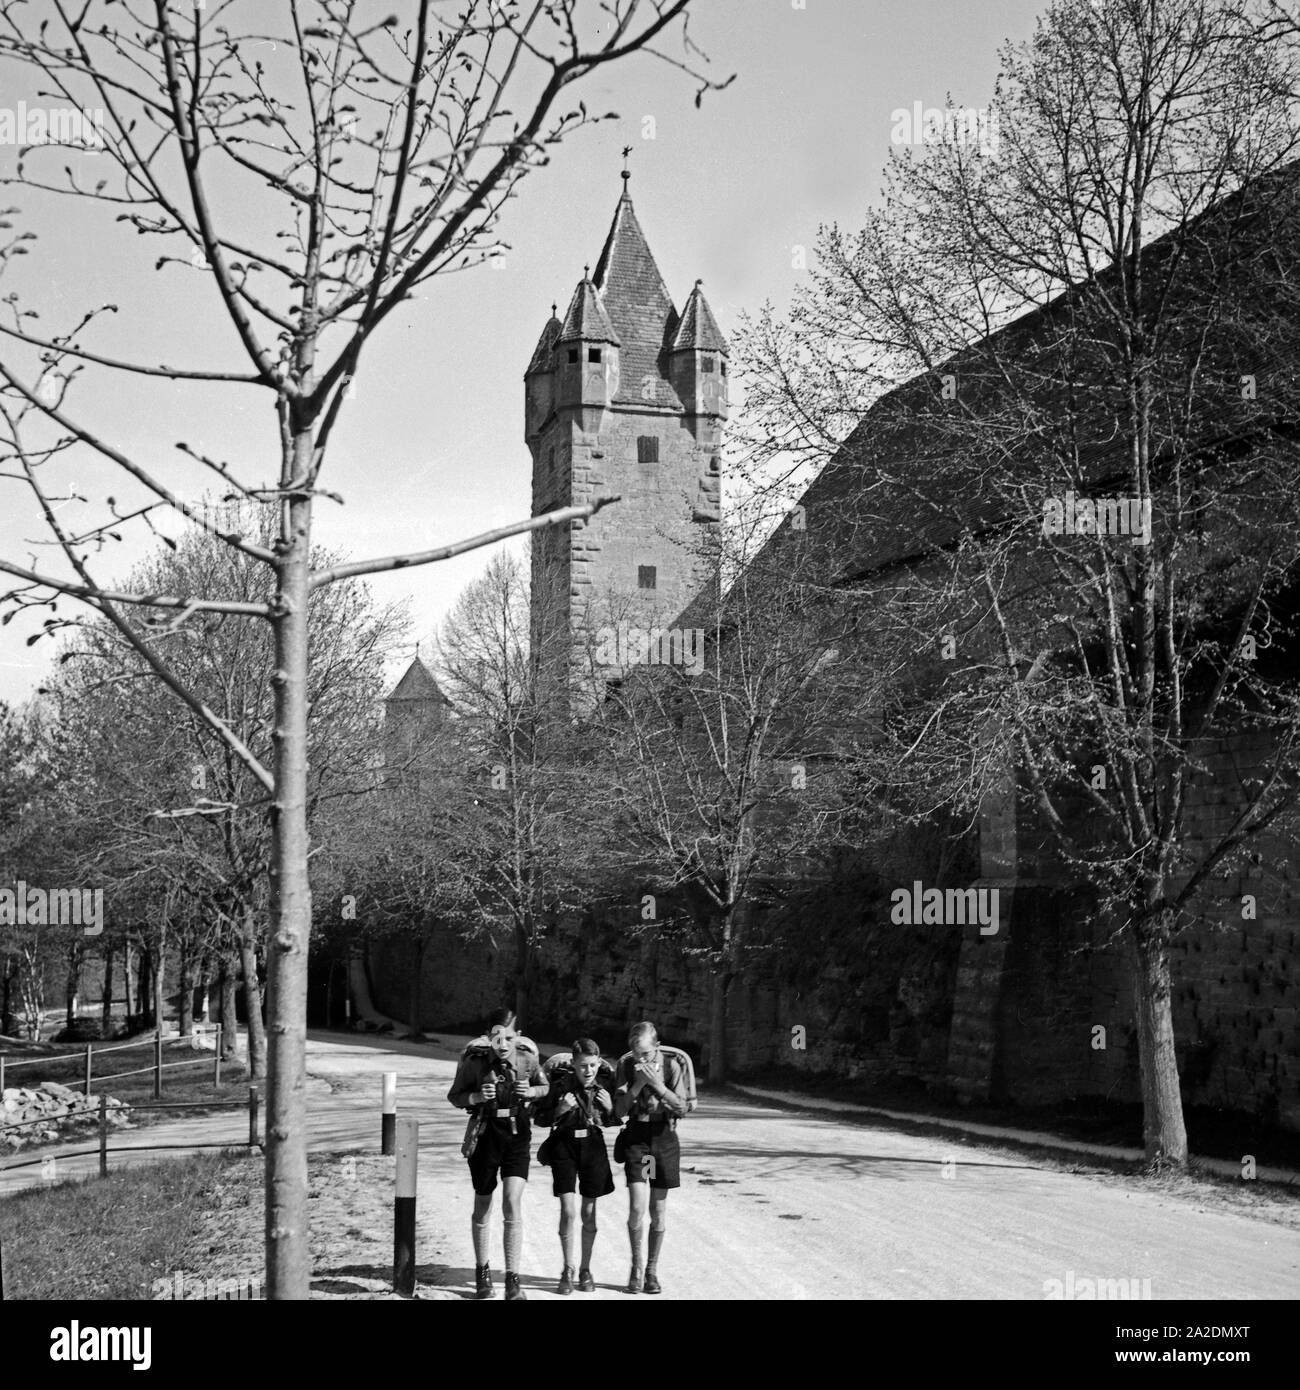 Drei Hitlerjungen auf einer Wandertour durch Deutschland un einer Stadtmauer mit Stadtturm, 1930er Jahre. Tre giovani Hitler vagare attraverso la Germania vicino a una parete della città e watchout. 1930s. Foto Stock